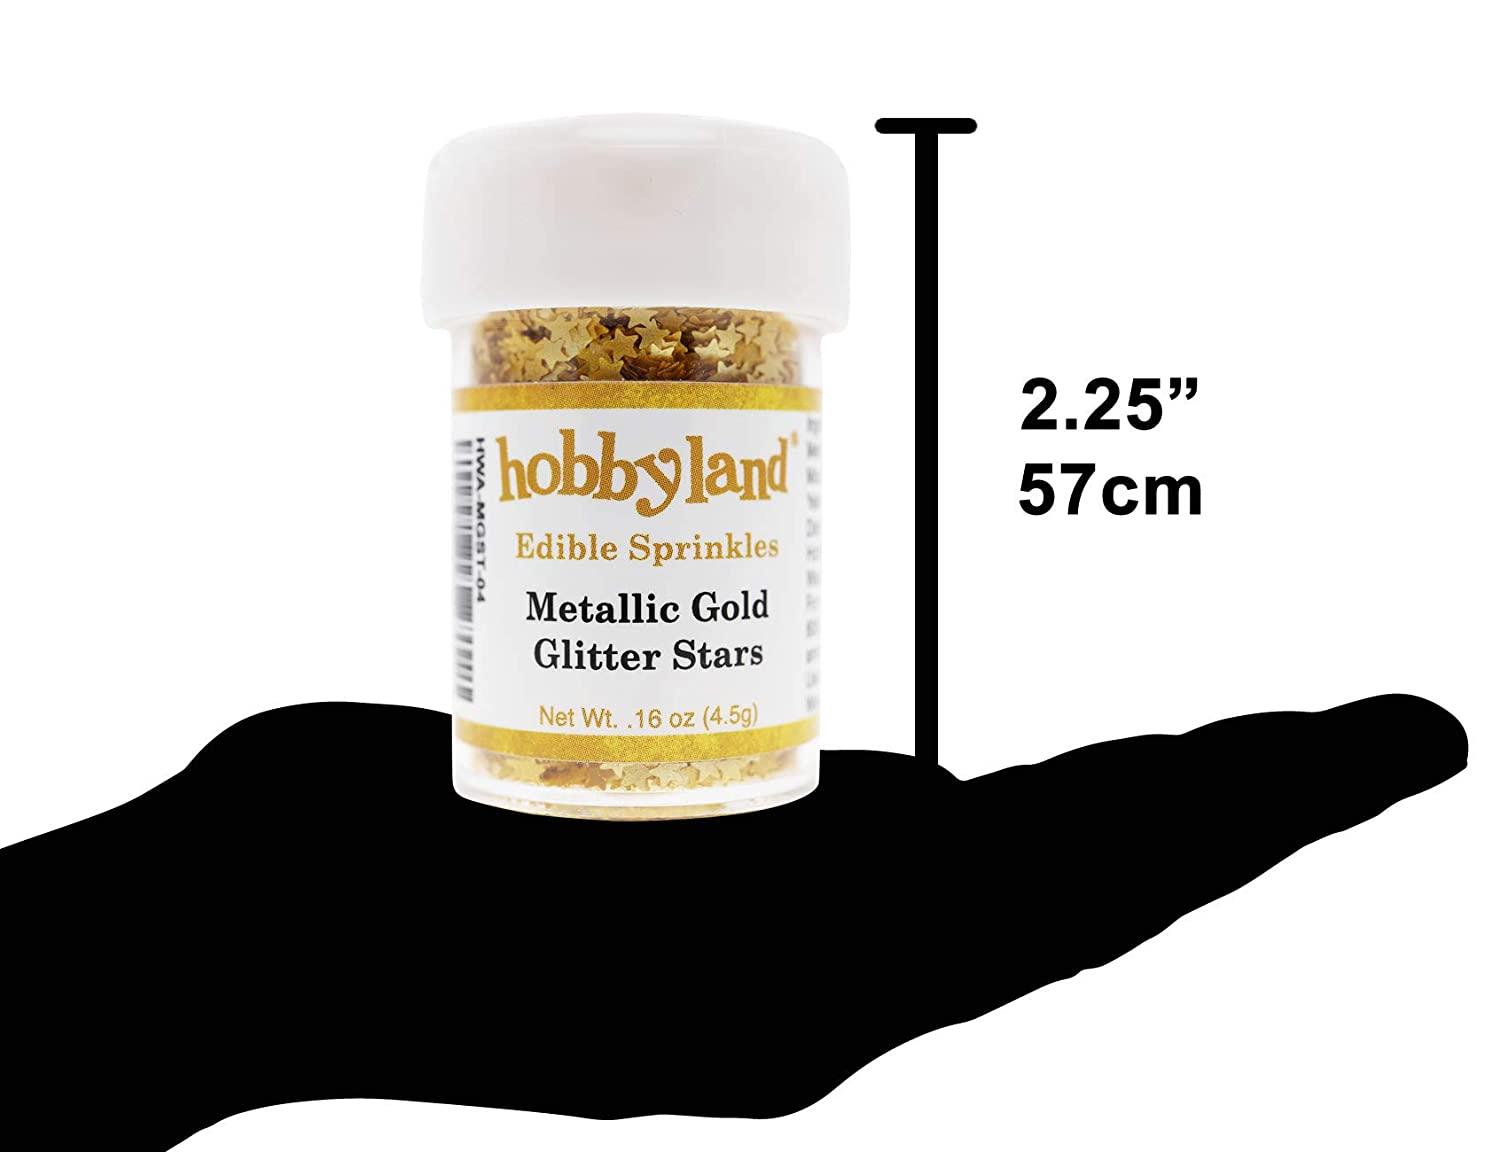 Hobbyland Edible Sprinkles (Metallic Gold Glitter Stars, 4.5g) 